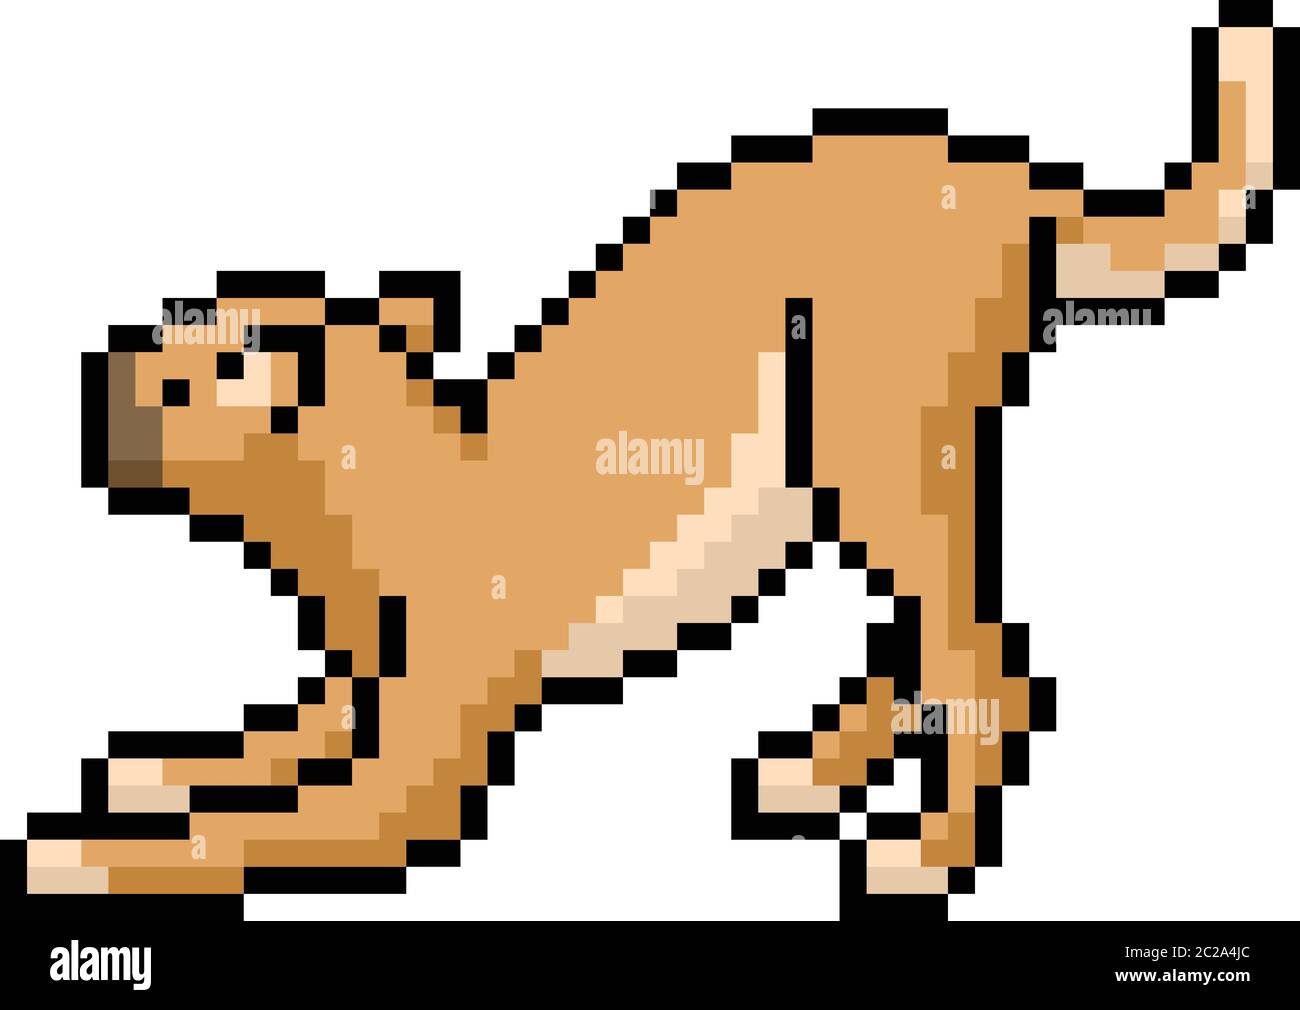 vector pixel art wild cat isolated cartoon Stock Vector Image & Art - Alamy